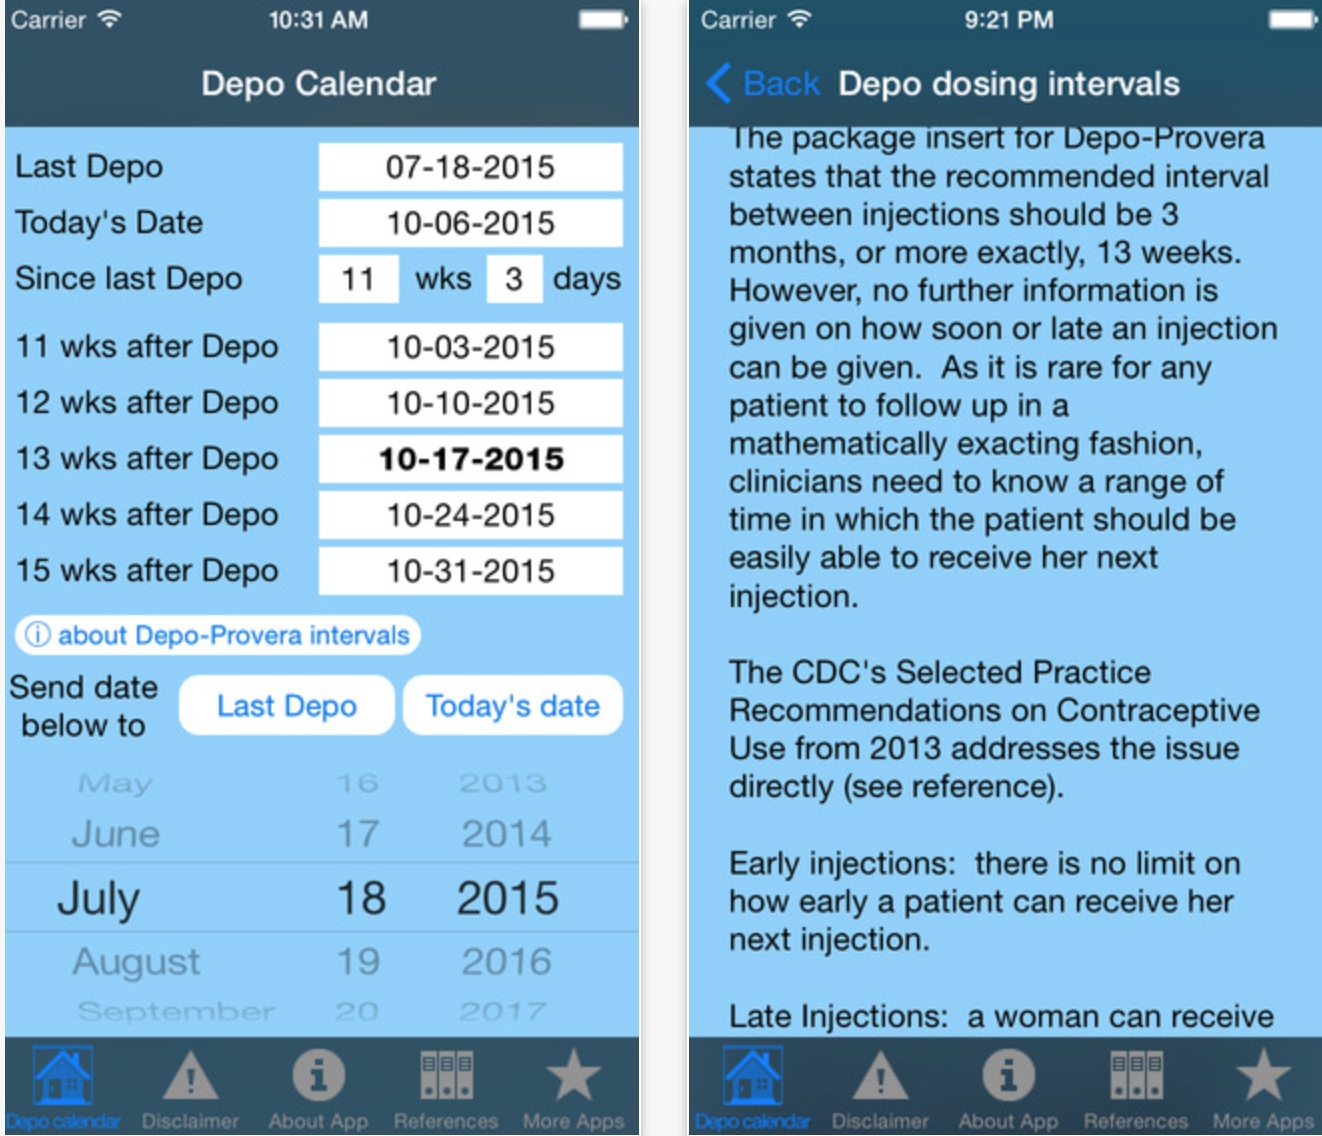 Depo Calendar App Could Significantly Improve Contraception-Depo Provera Calculator 2021